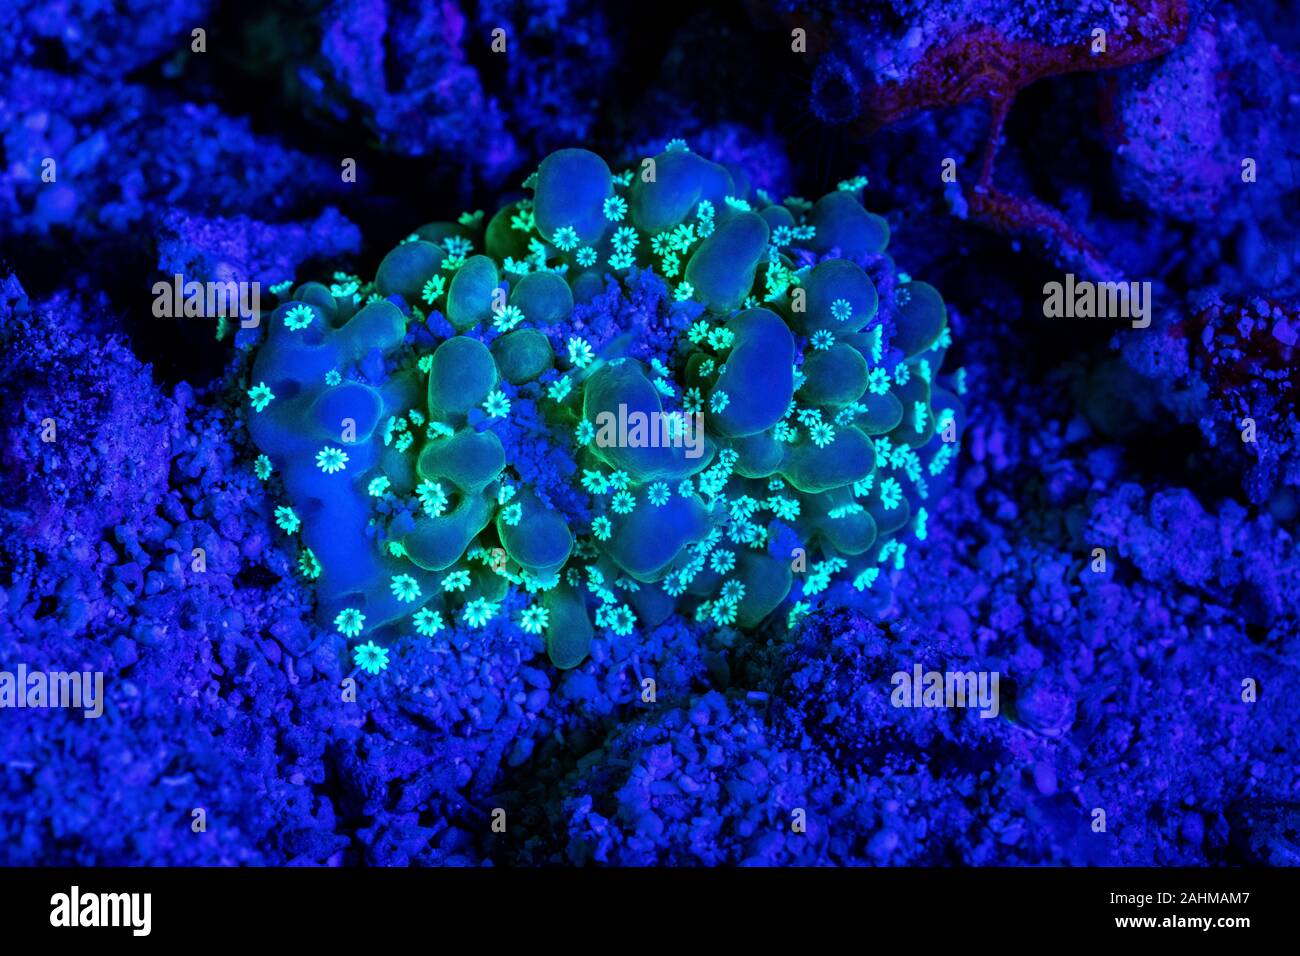 Korallen oder Anemonen leuchtet unter Schwarzlicht Leuchten  Leuchtstofflampen bei Nacht Stockfotografie - Alamy